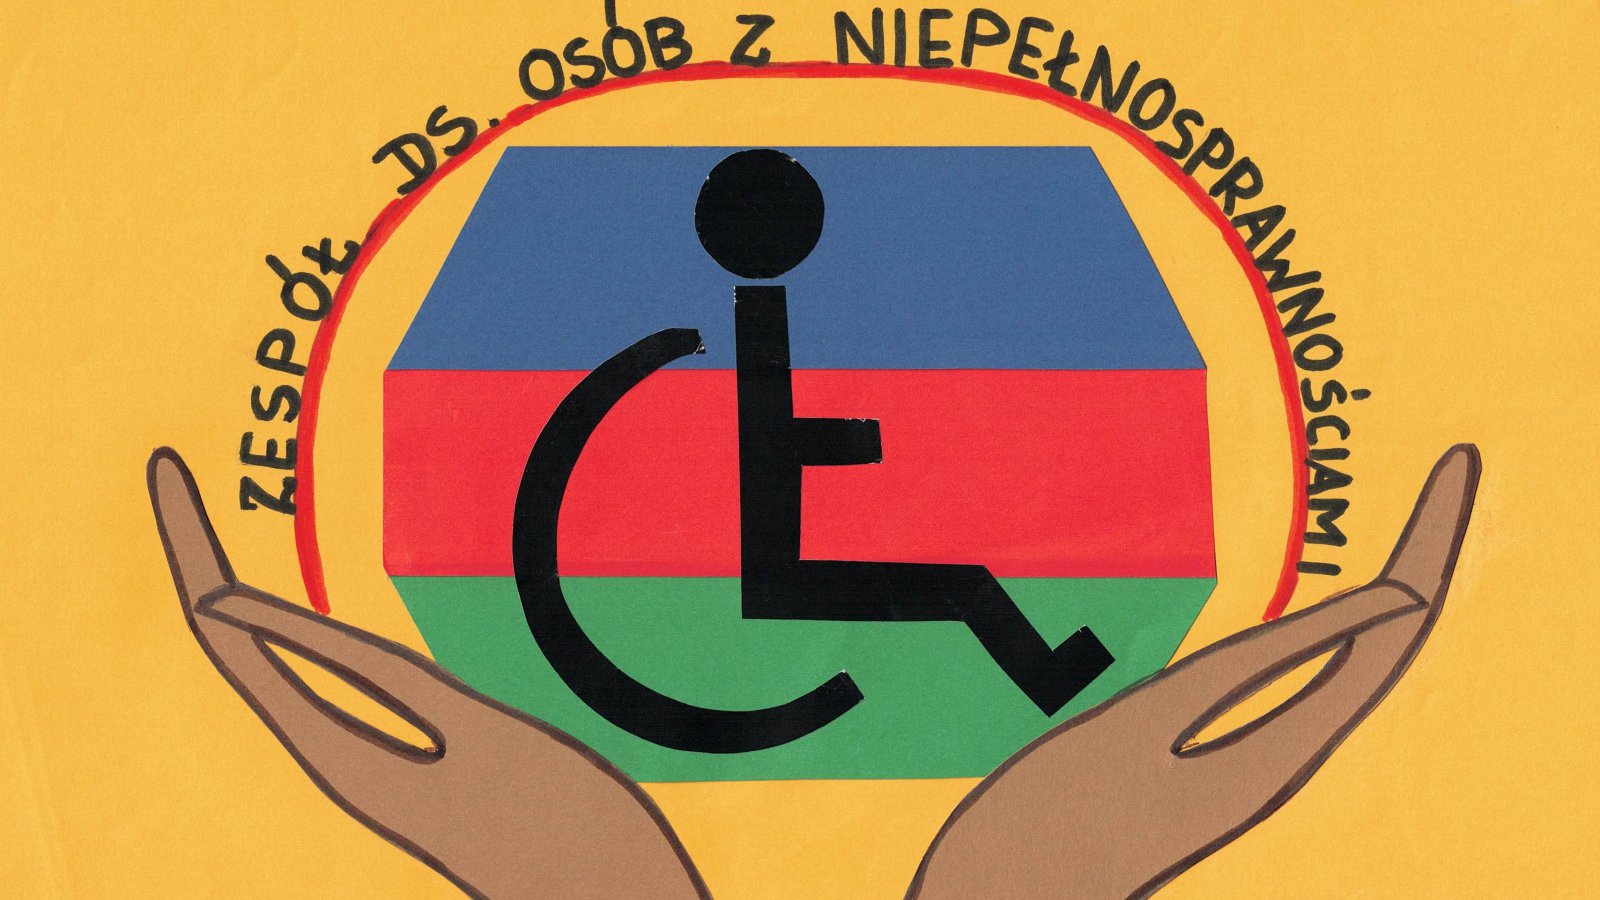 Dłonie uniesione do góry, logo osoby siedzącej na wózku na tle flagi Dzierżoniowa